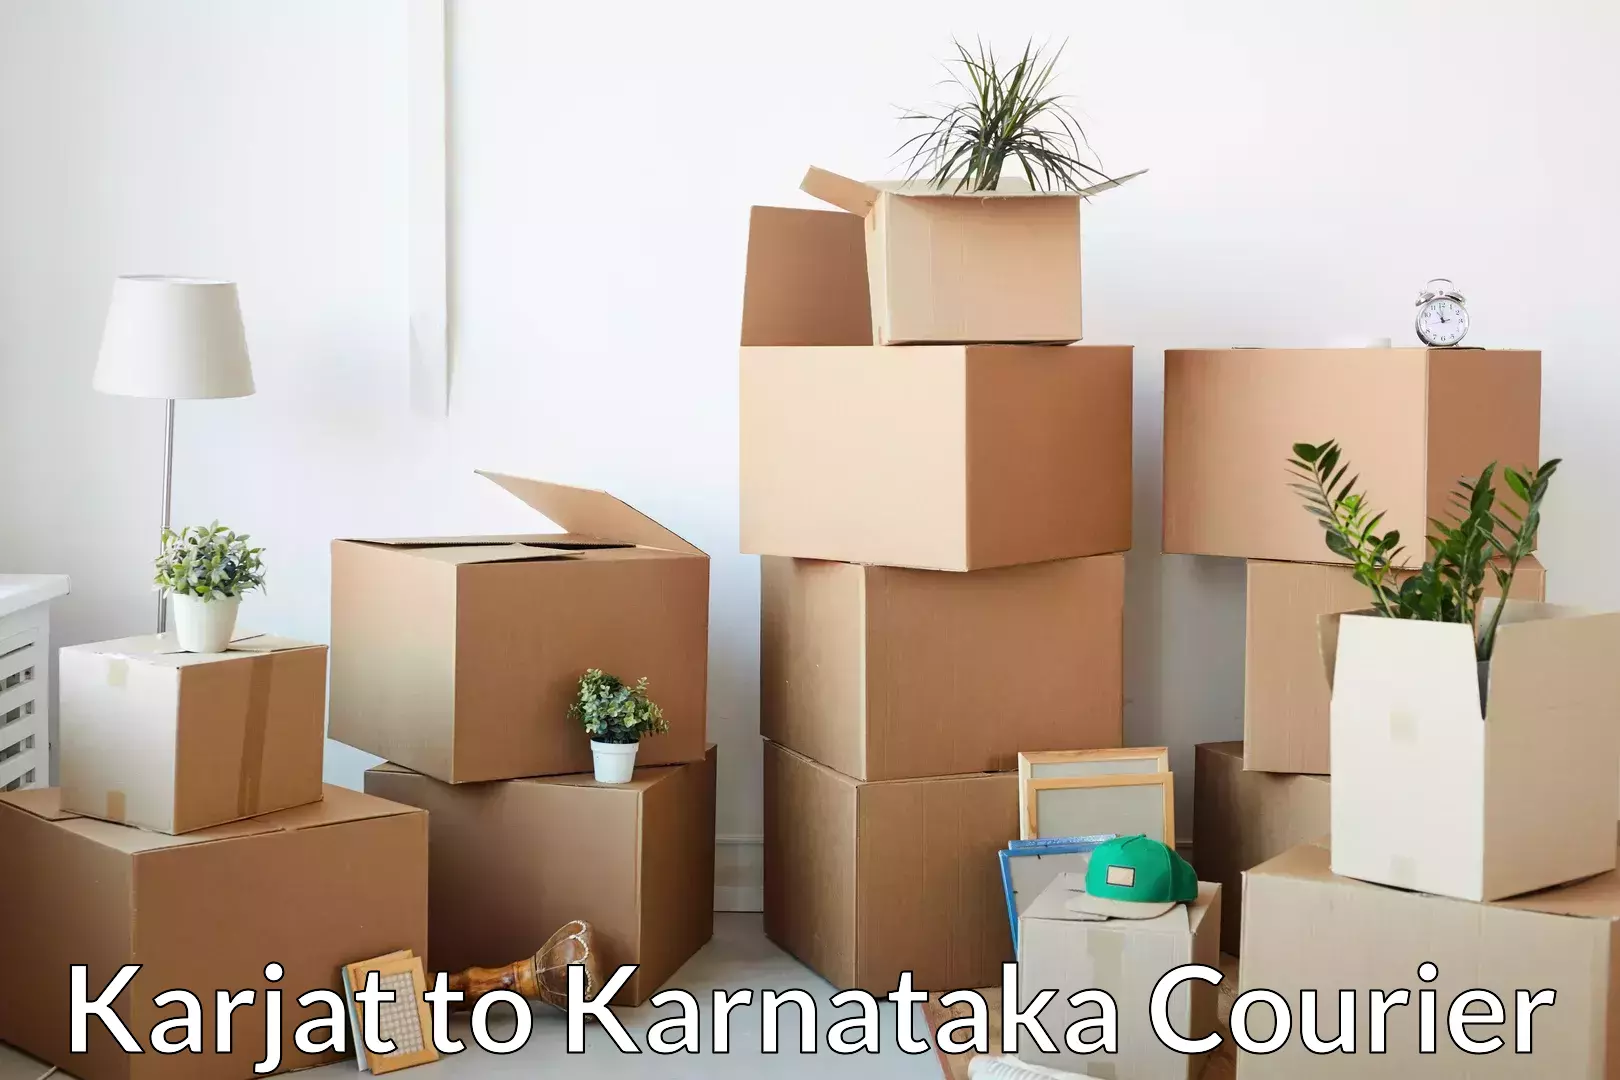 Household transport experts Karjat to Karnataka